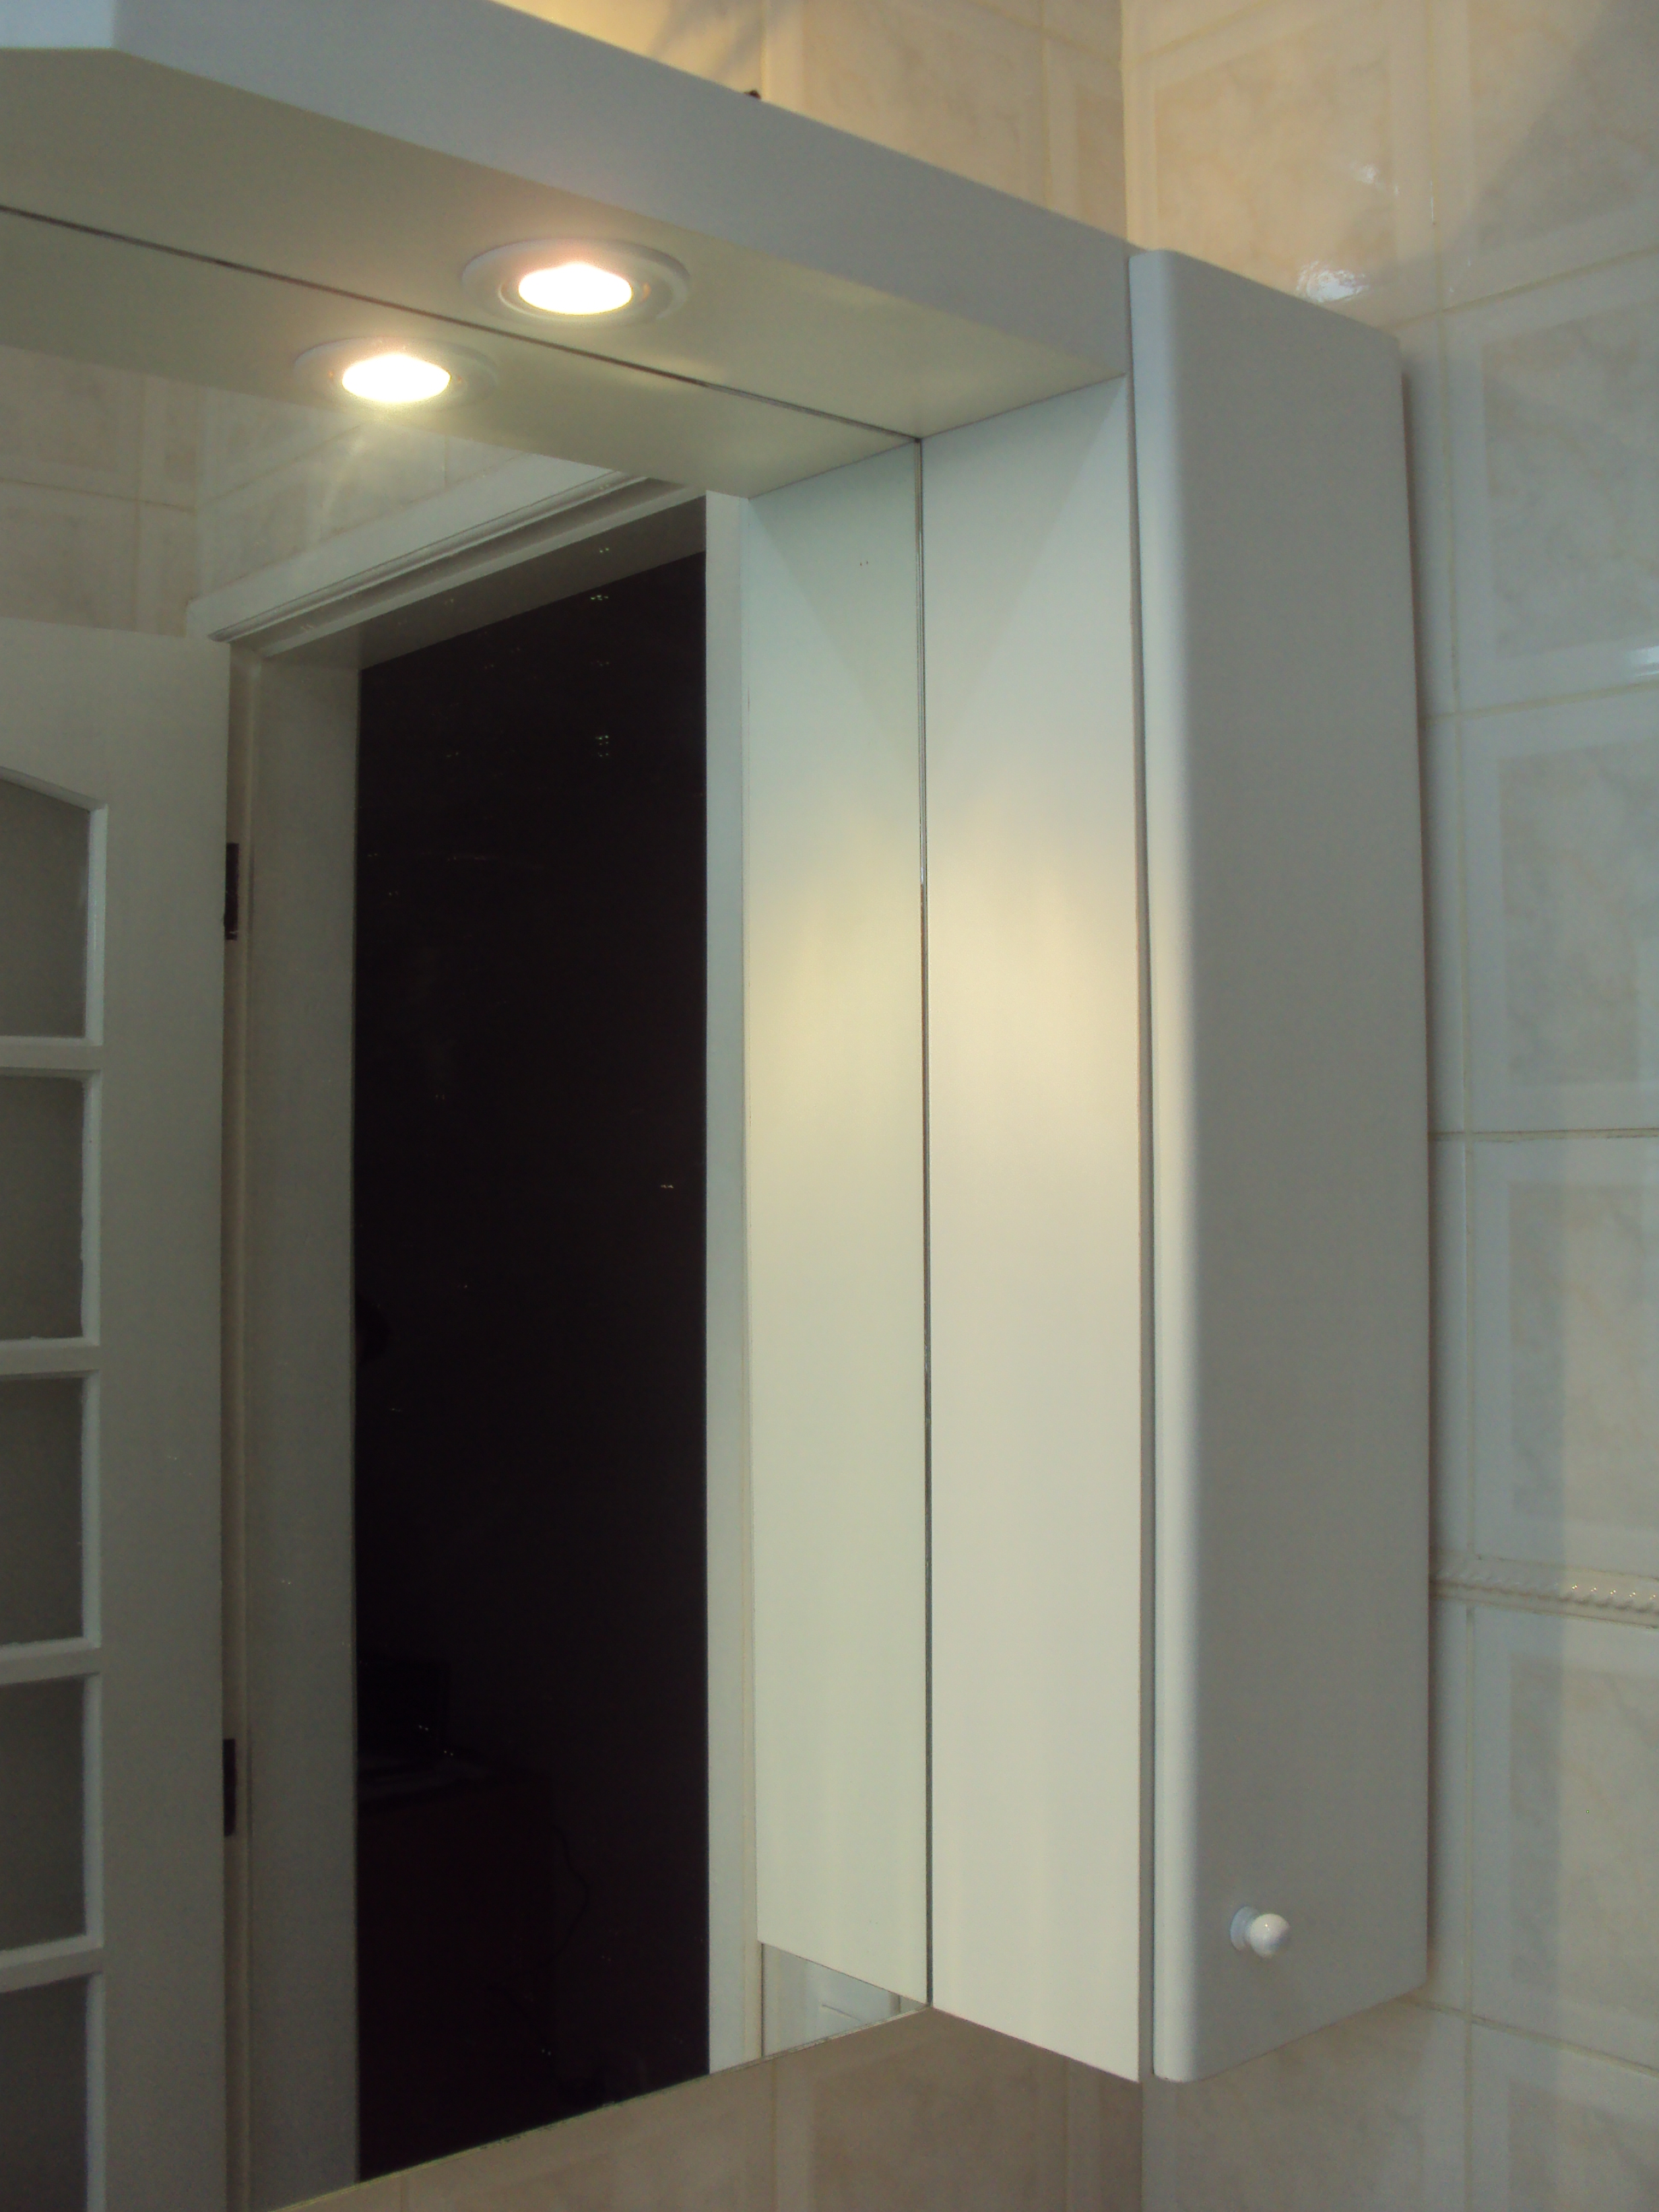 Amarinho para banheiro em Fórmica Branca com espelho, uma portinha e iluminado.